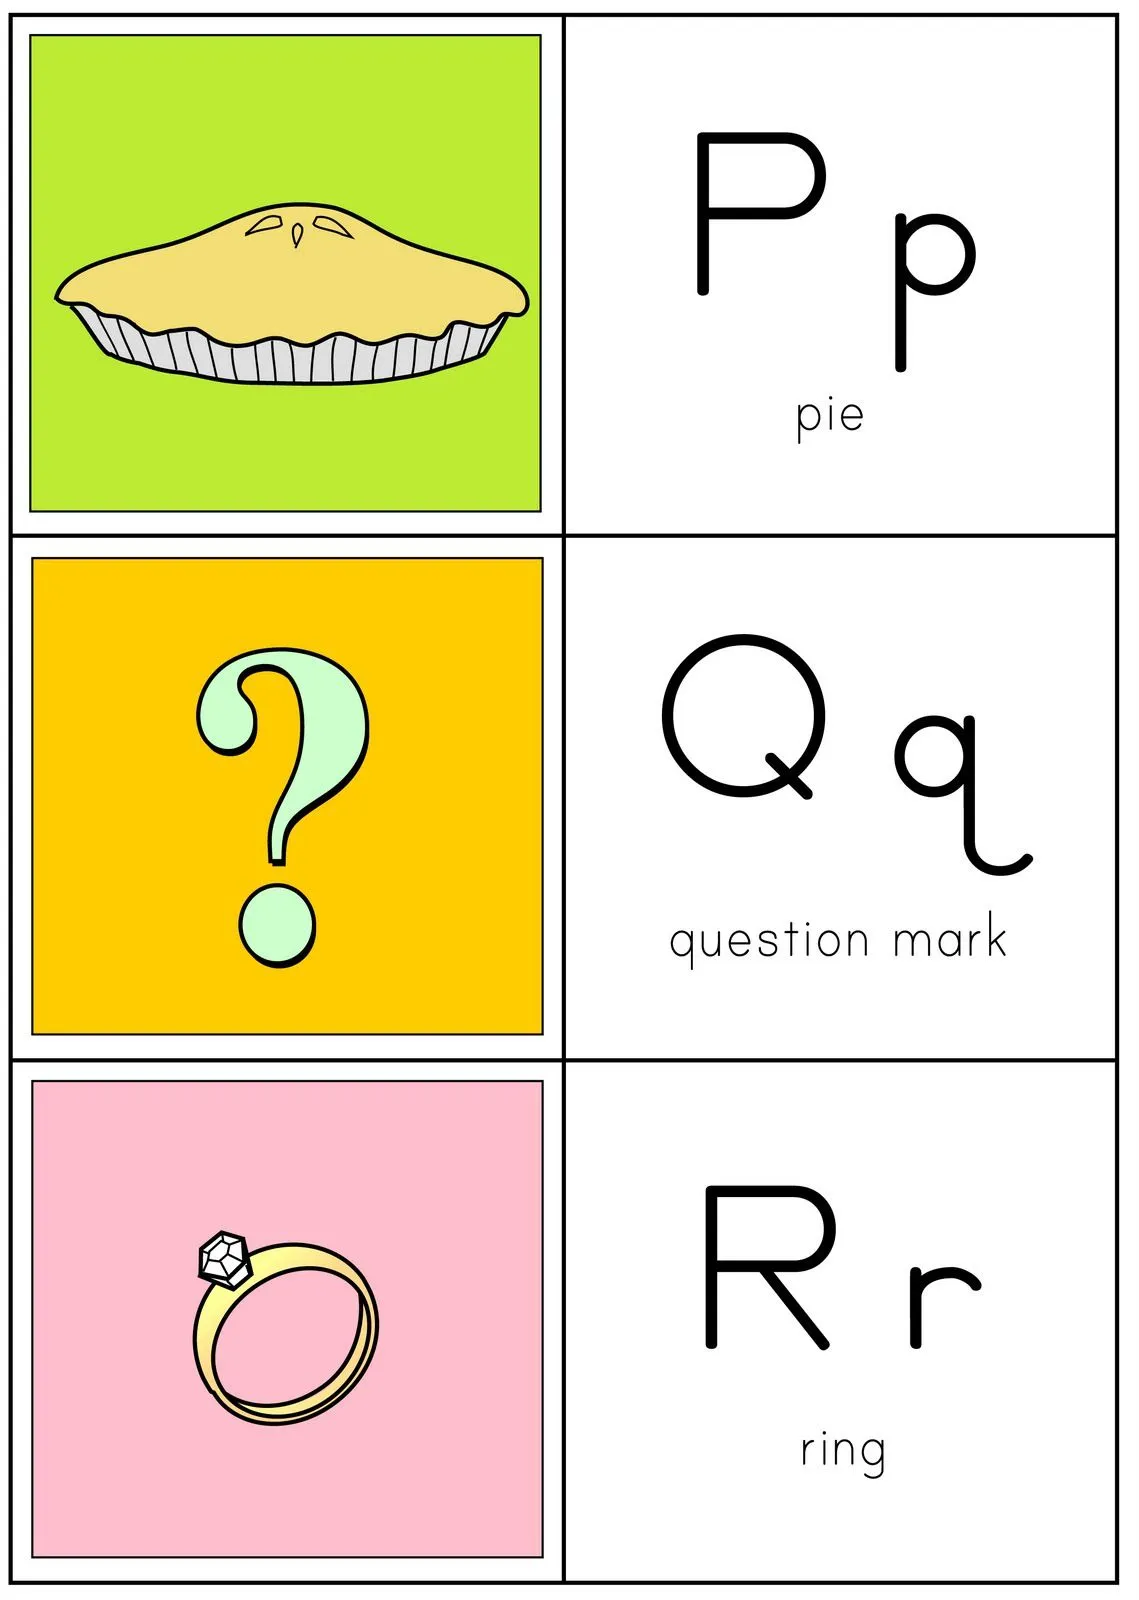 alfabeto ilustrado em inglês | Visite o novo blog: http://